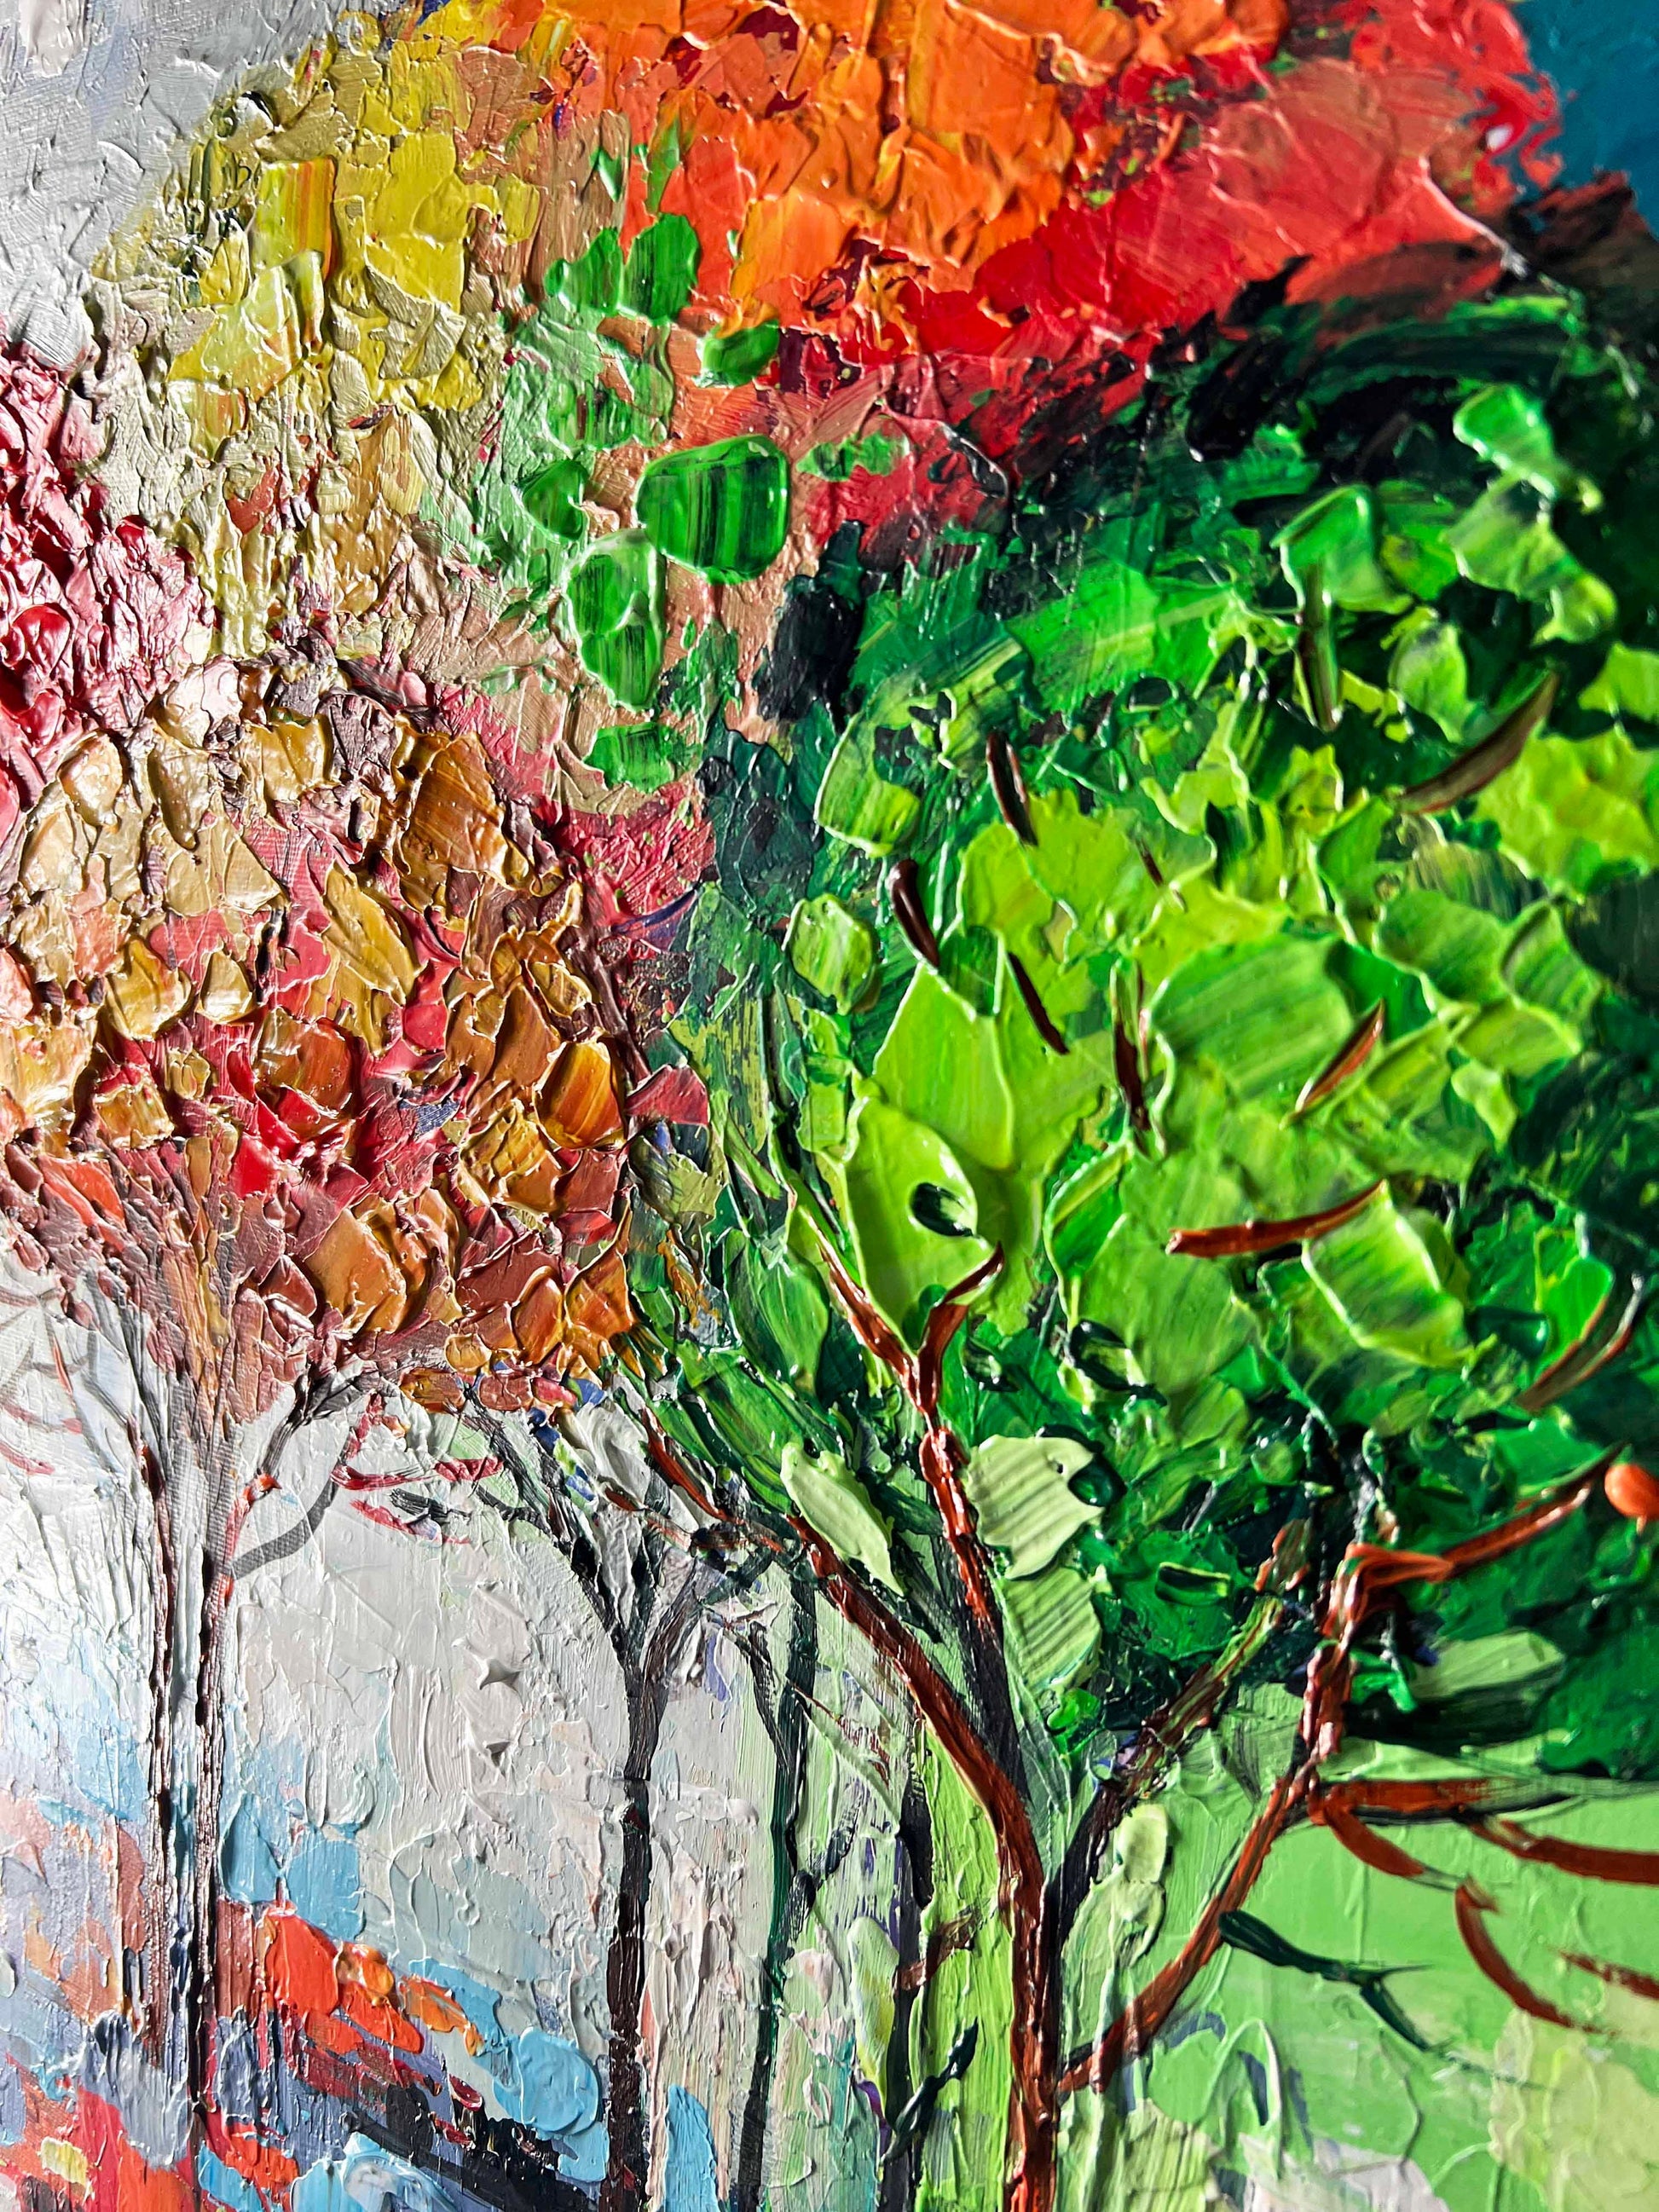 Autumn Landscape Oil Painting Textured Palette Knife Original